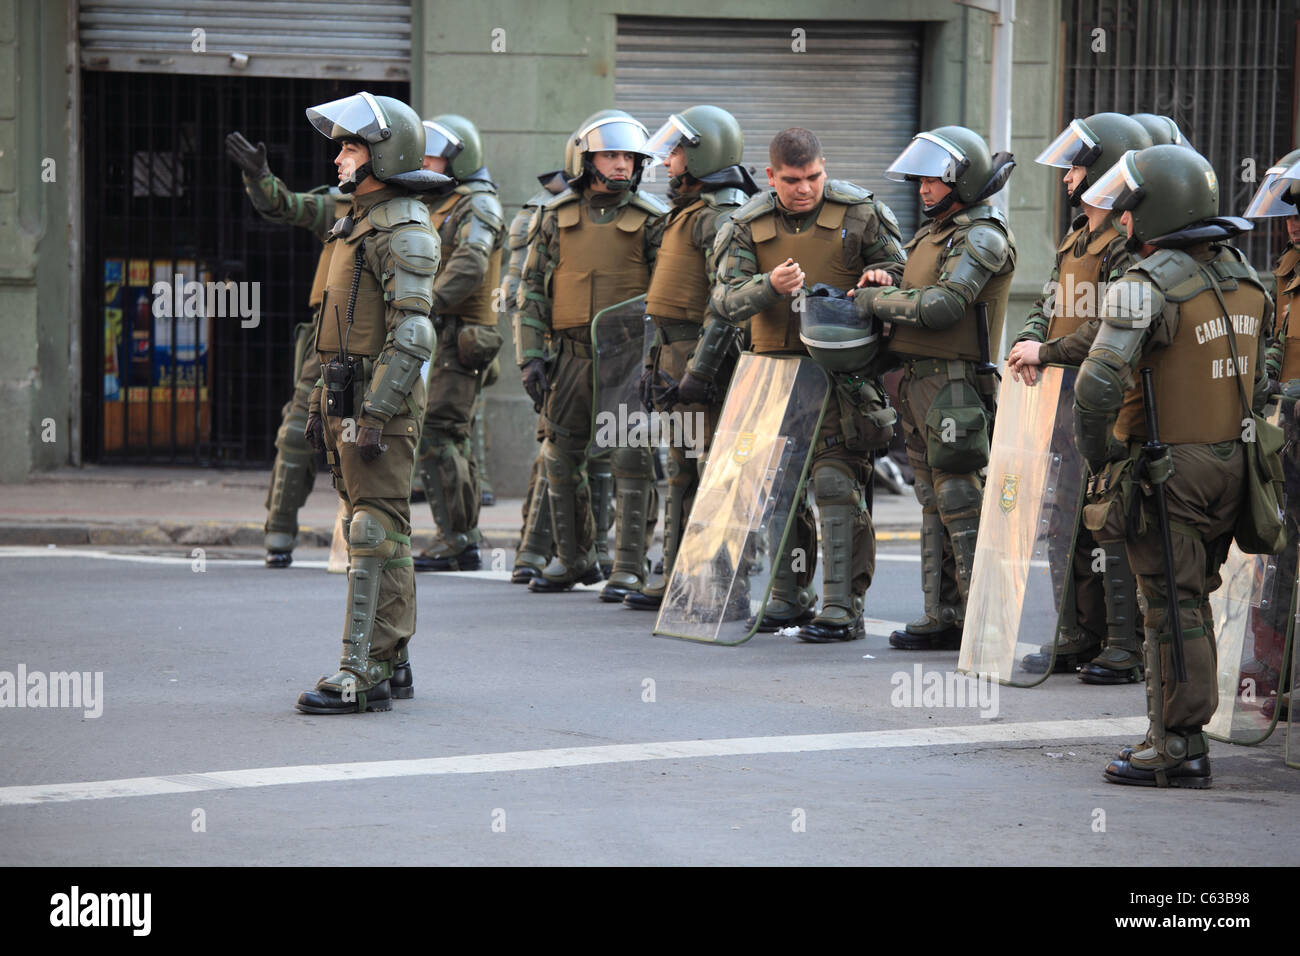 Un groupe d'anti-émeute de la police chilienne (Fuerzas Especiales de carabiniers) pendant une grève d'étudiants dans le centre-ville de Santiago, au Chili. Banque D'Images